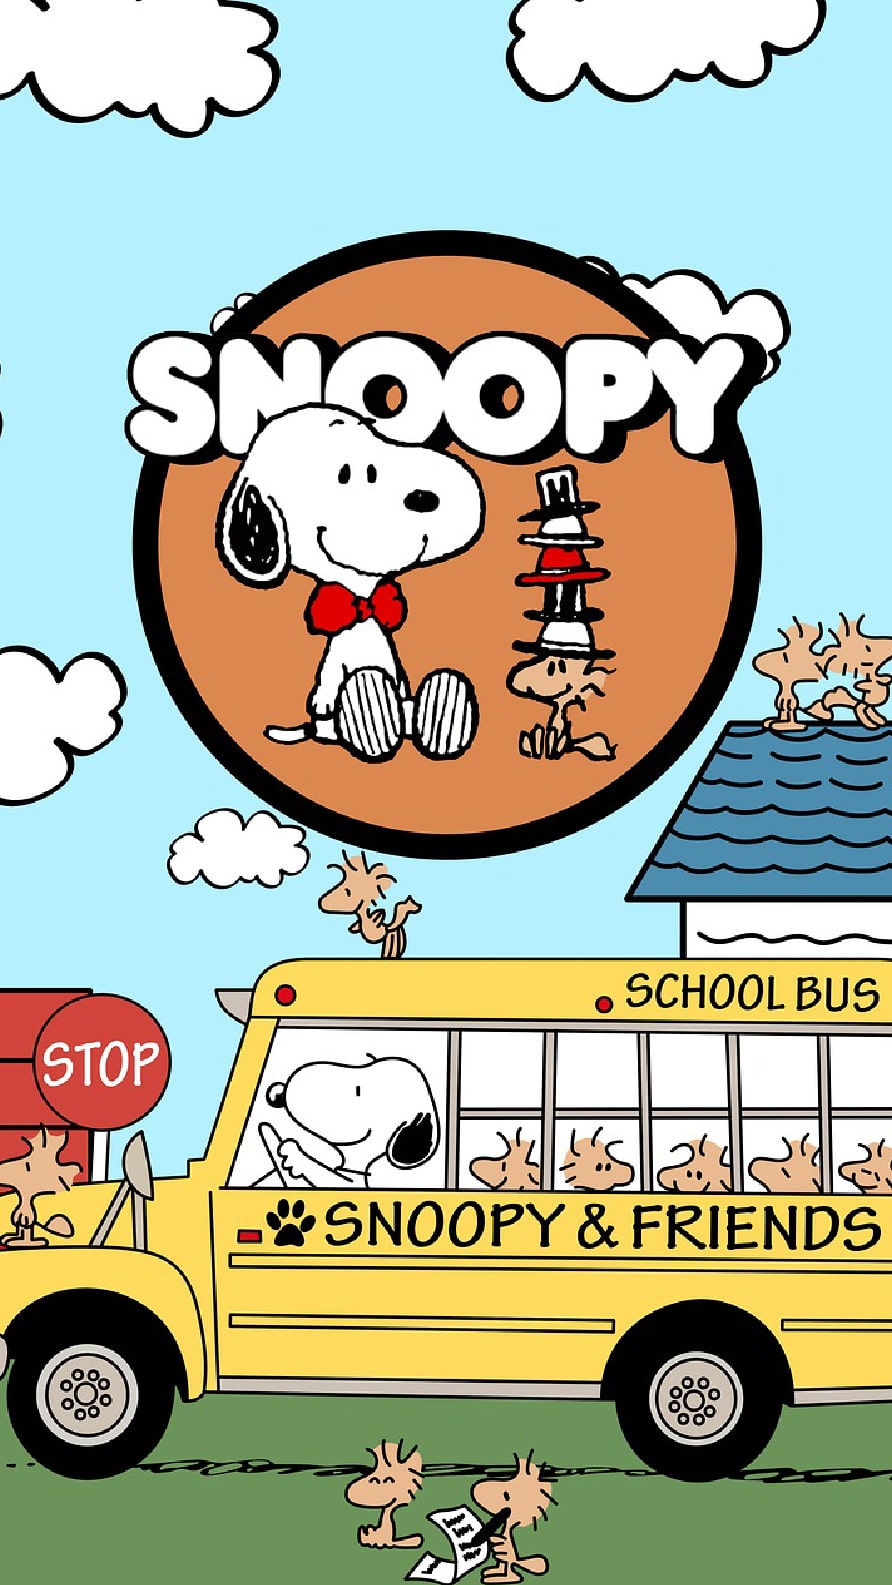 Papel de parede e Wallpaper de Snoopy para iPhone